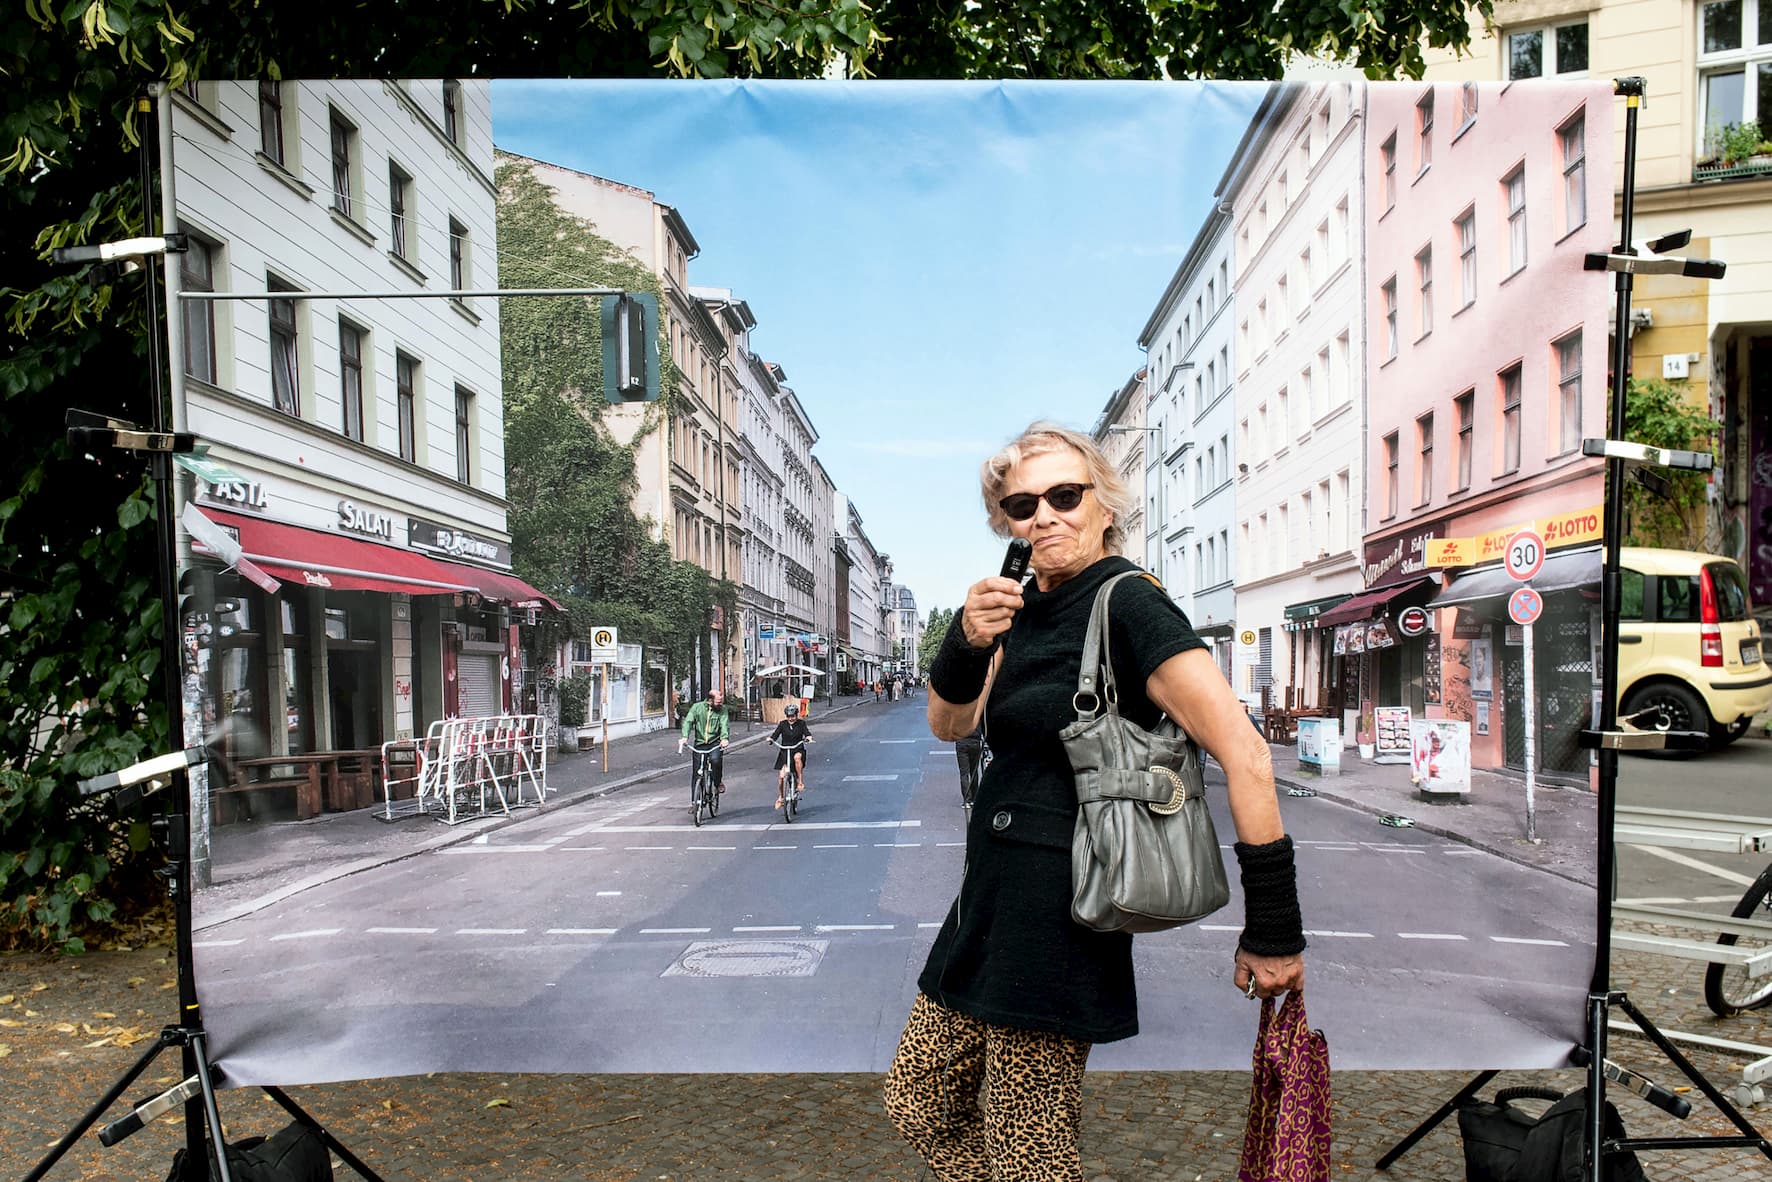 Coole Kreuzberger Oma posiert vor der Leinwand. Sie trägt eine graue Handtasche über der Schulter und Hosen mit Leopardenprint.